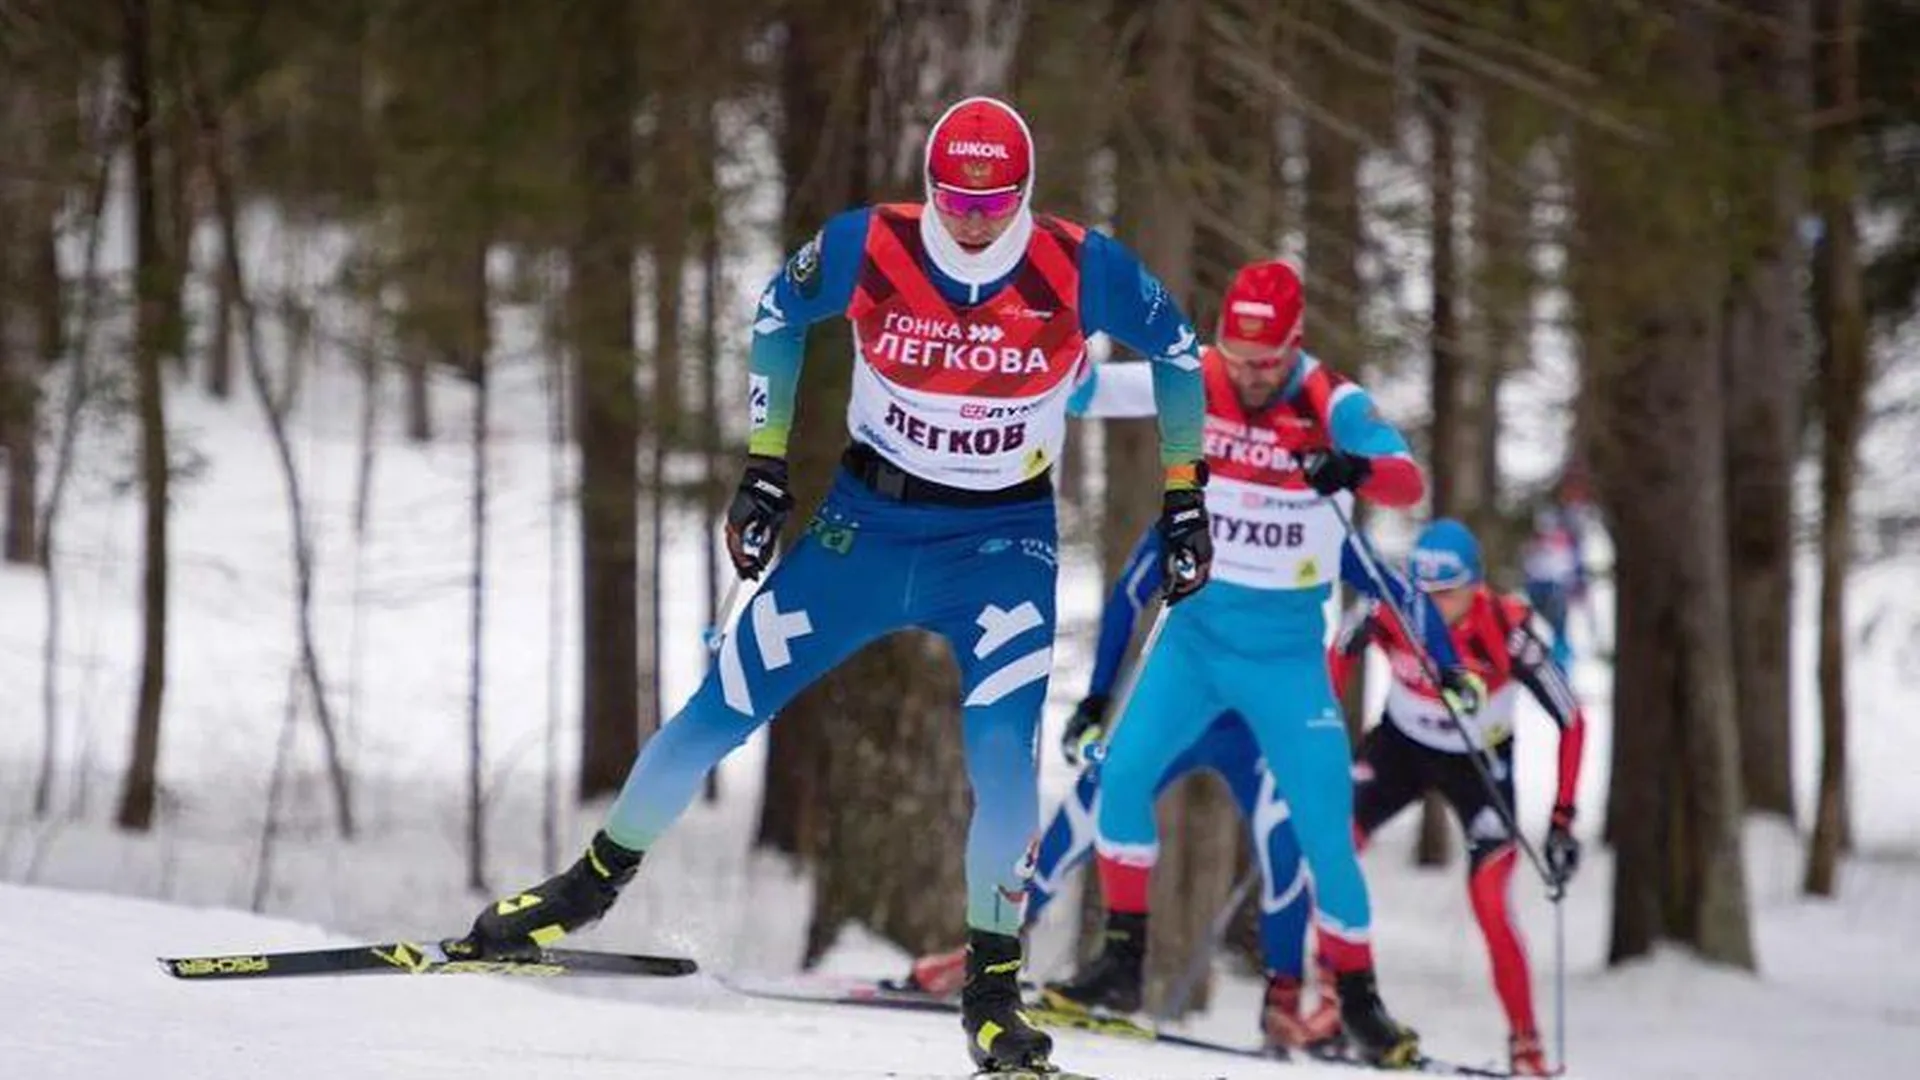 Лыжный фестиваль «Гонка Легкова» вернется в Подмосковье